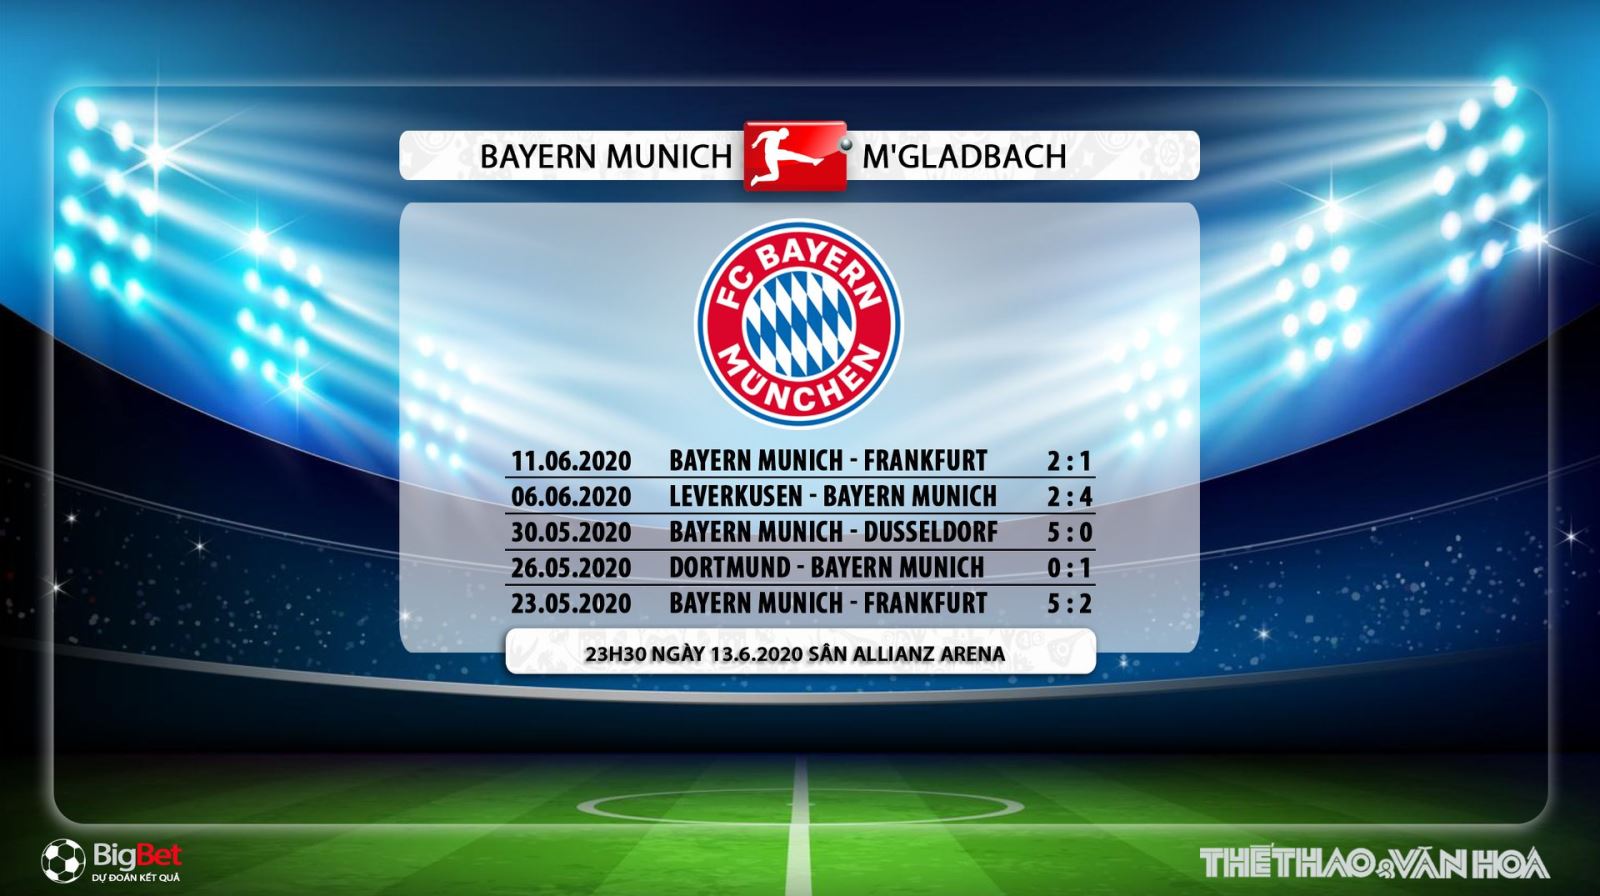 Bayern Munich vs Gladbach, kèo bóng đá, bóng đá, bong da, Bayern Munich, Gladbach, dự đoán, nhận định